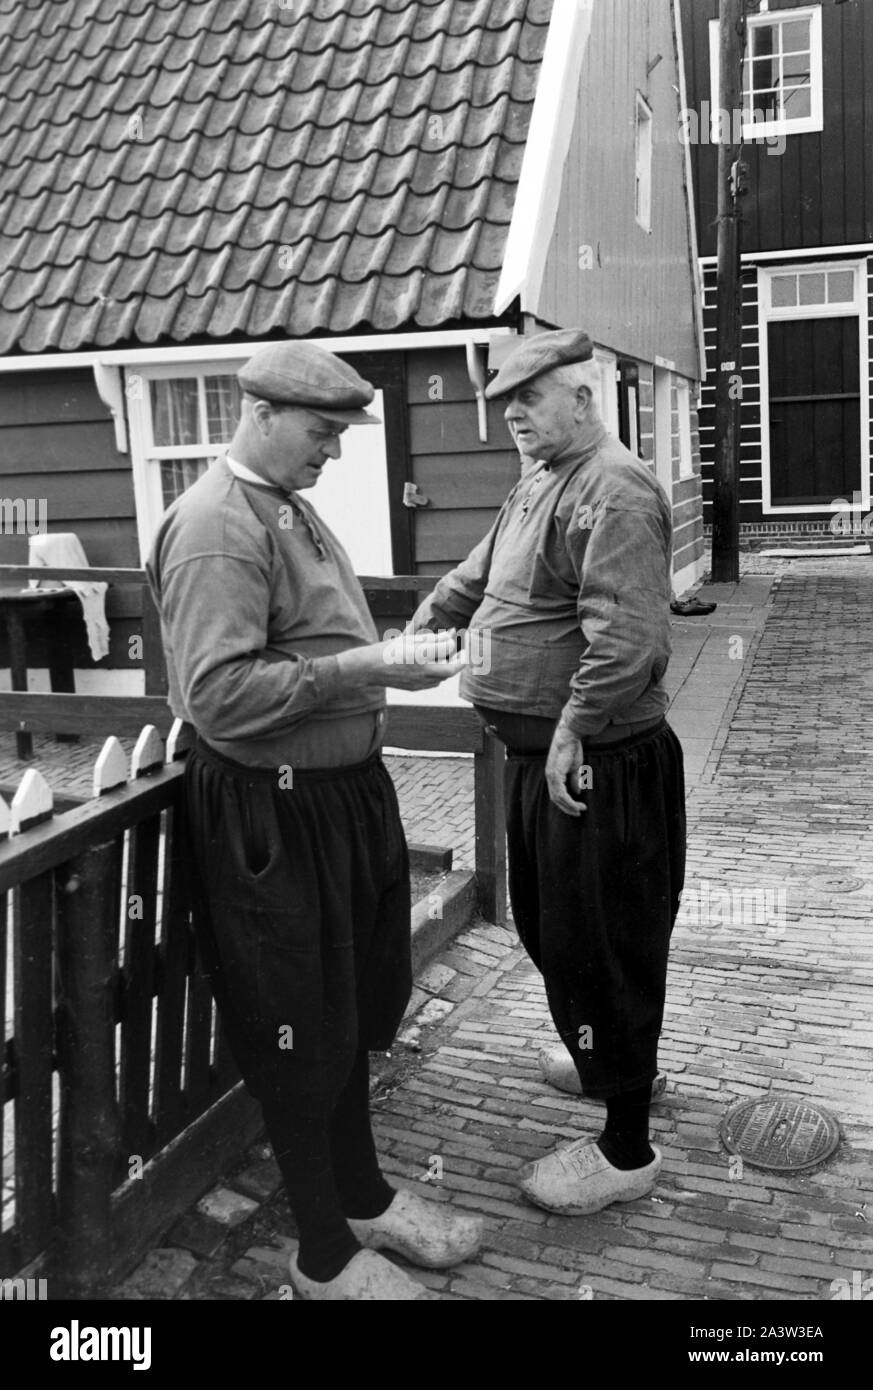 Zwei Männer in Tracht im Dorf auf der Insel Marken, Niederlande 1971. Two men wearing typical array of Marken island, The Netherlands 1971. Stock Photo